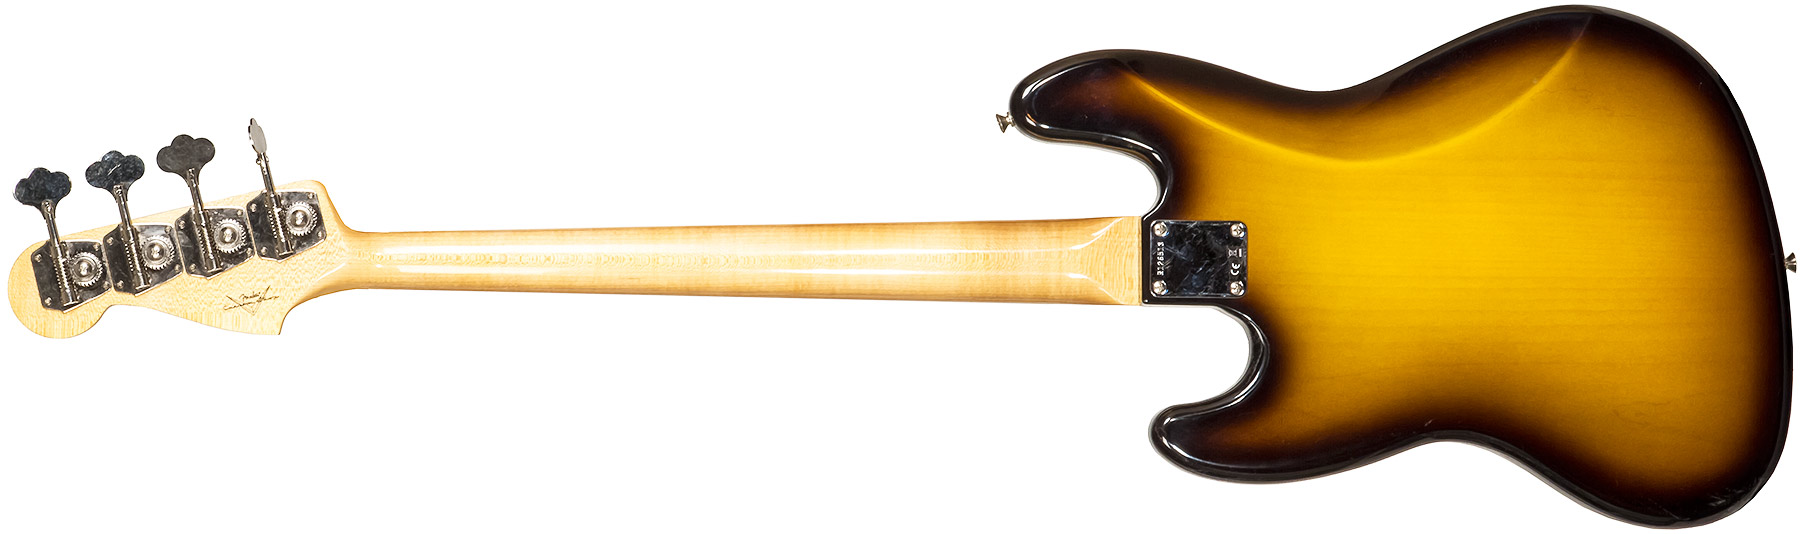 Fender Custom Shop Jazz Bass 1964 Rw #r126513 - Closet Classic 2-color Sunburst - Solidbody E-bass - Variation 1